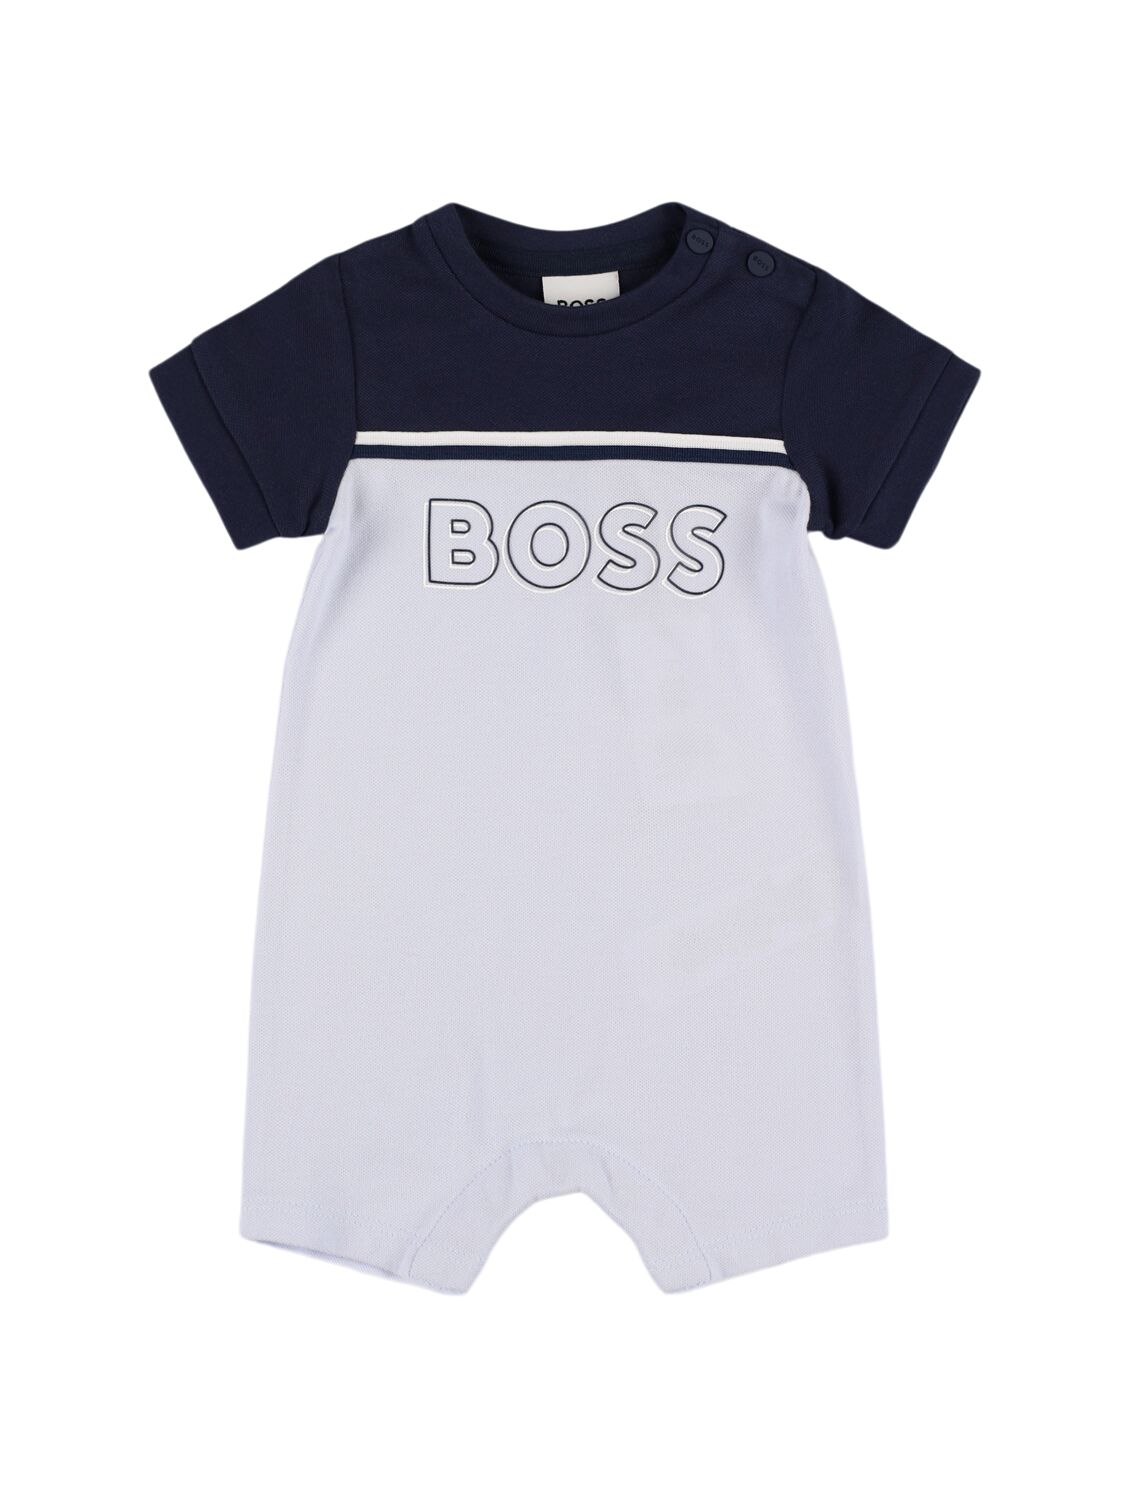 Hugo Boss Babies' 棉质珠地网眼布连身裤 In Light Blue